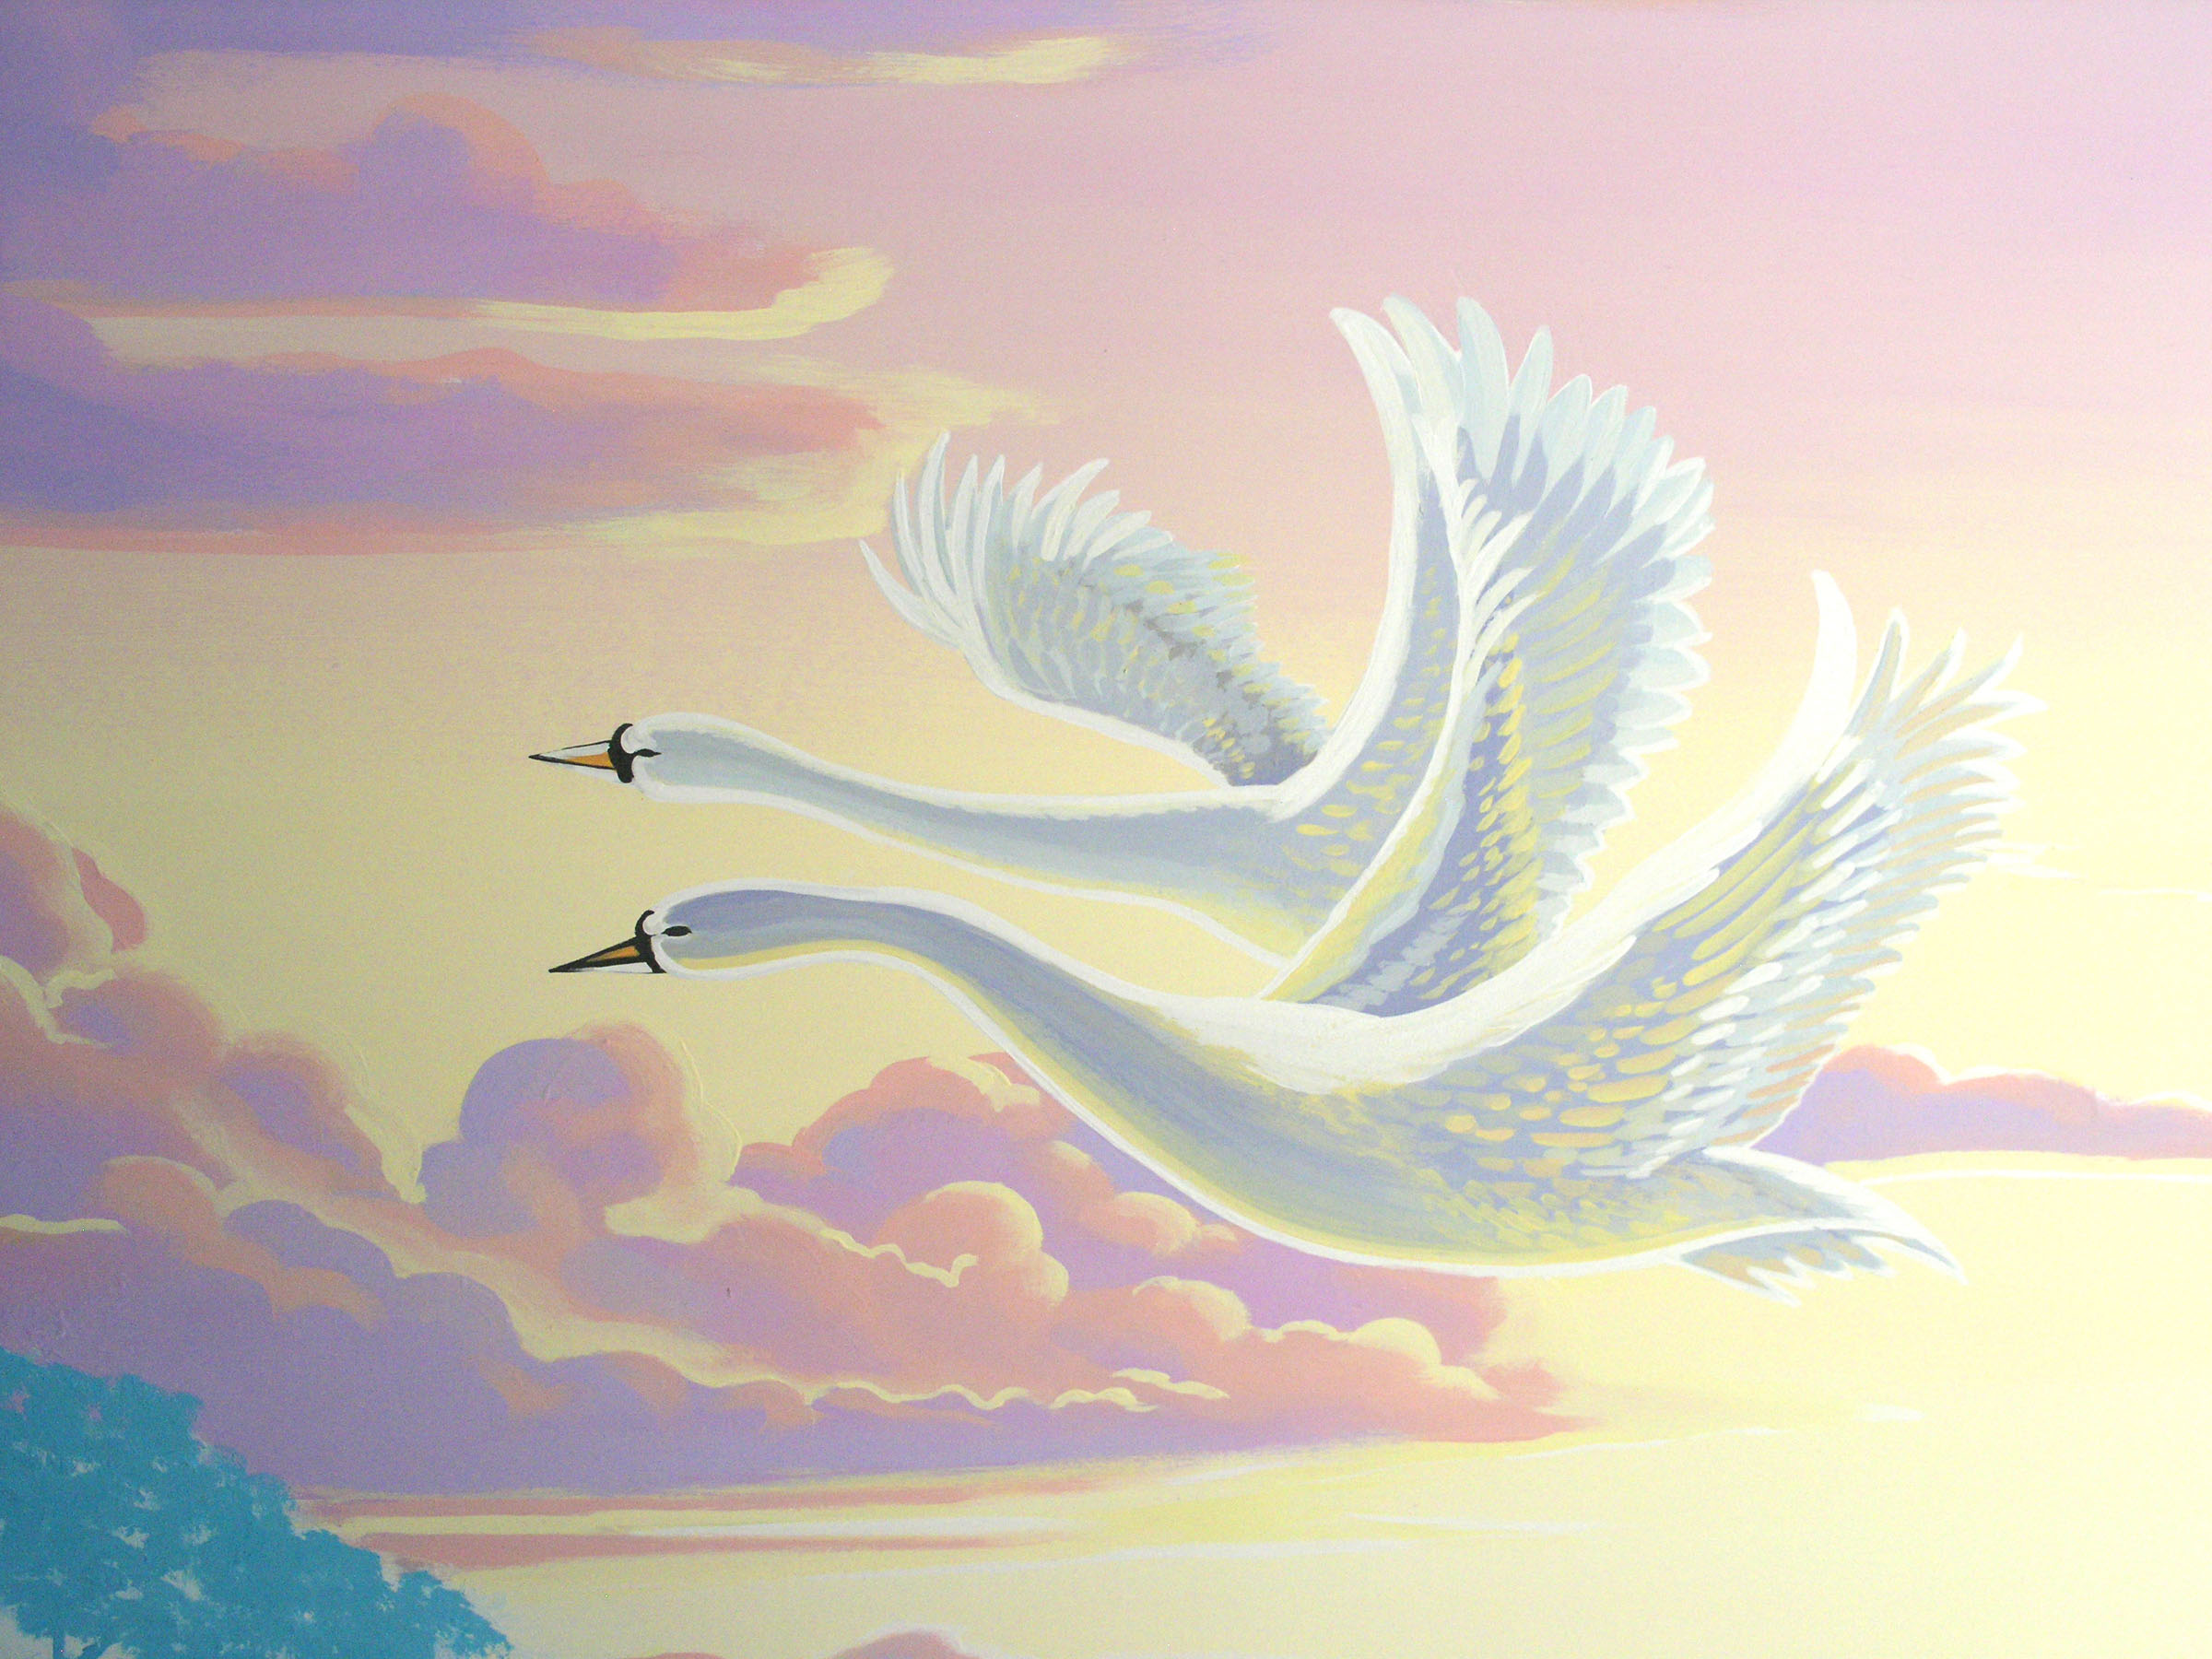 Swans in sunset children's mural